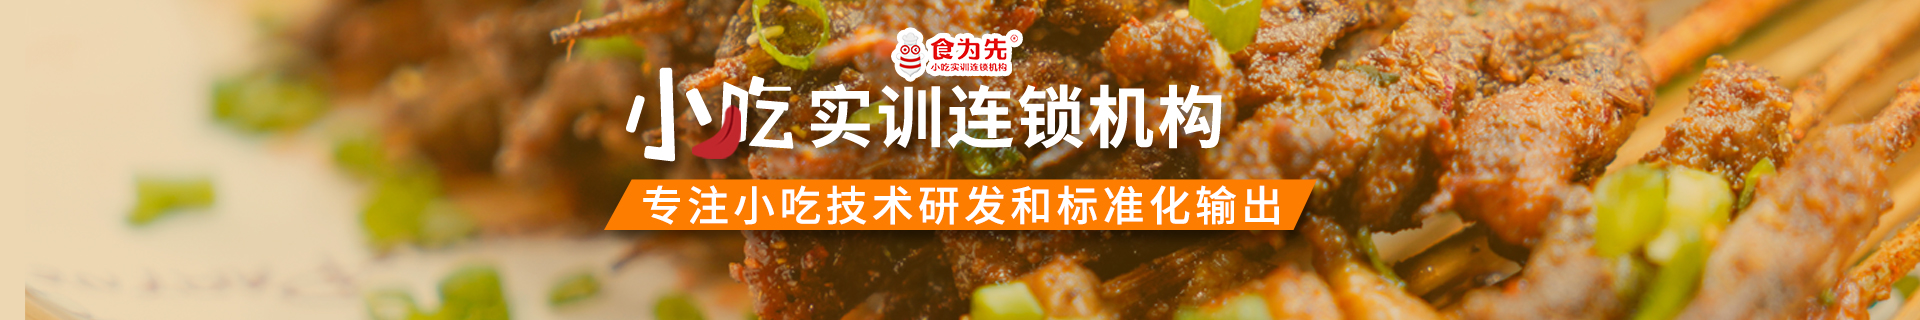 杭州蕭山食為先小吃實訓機構